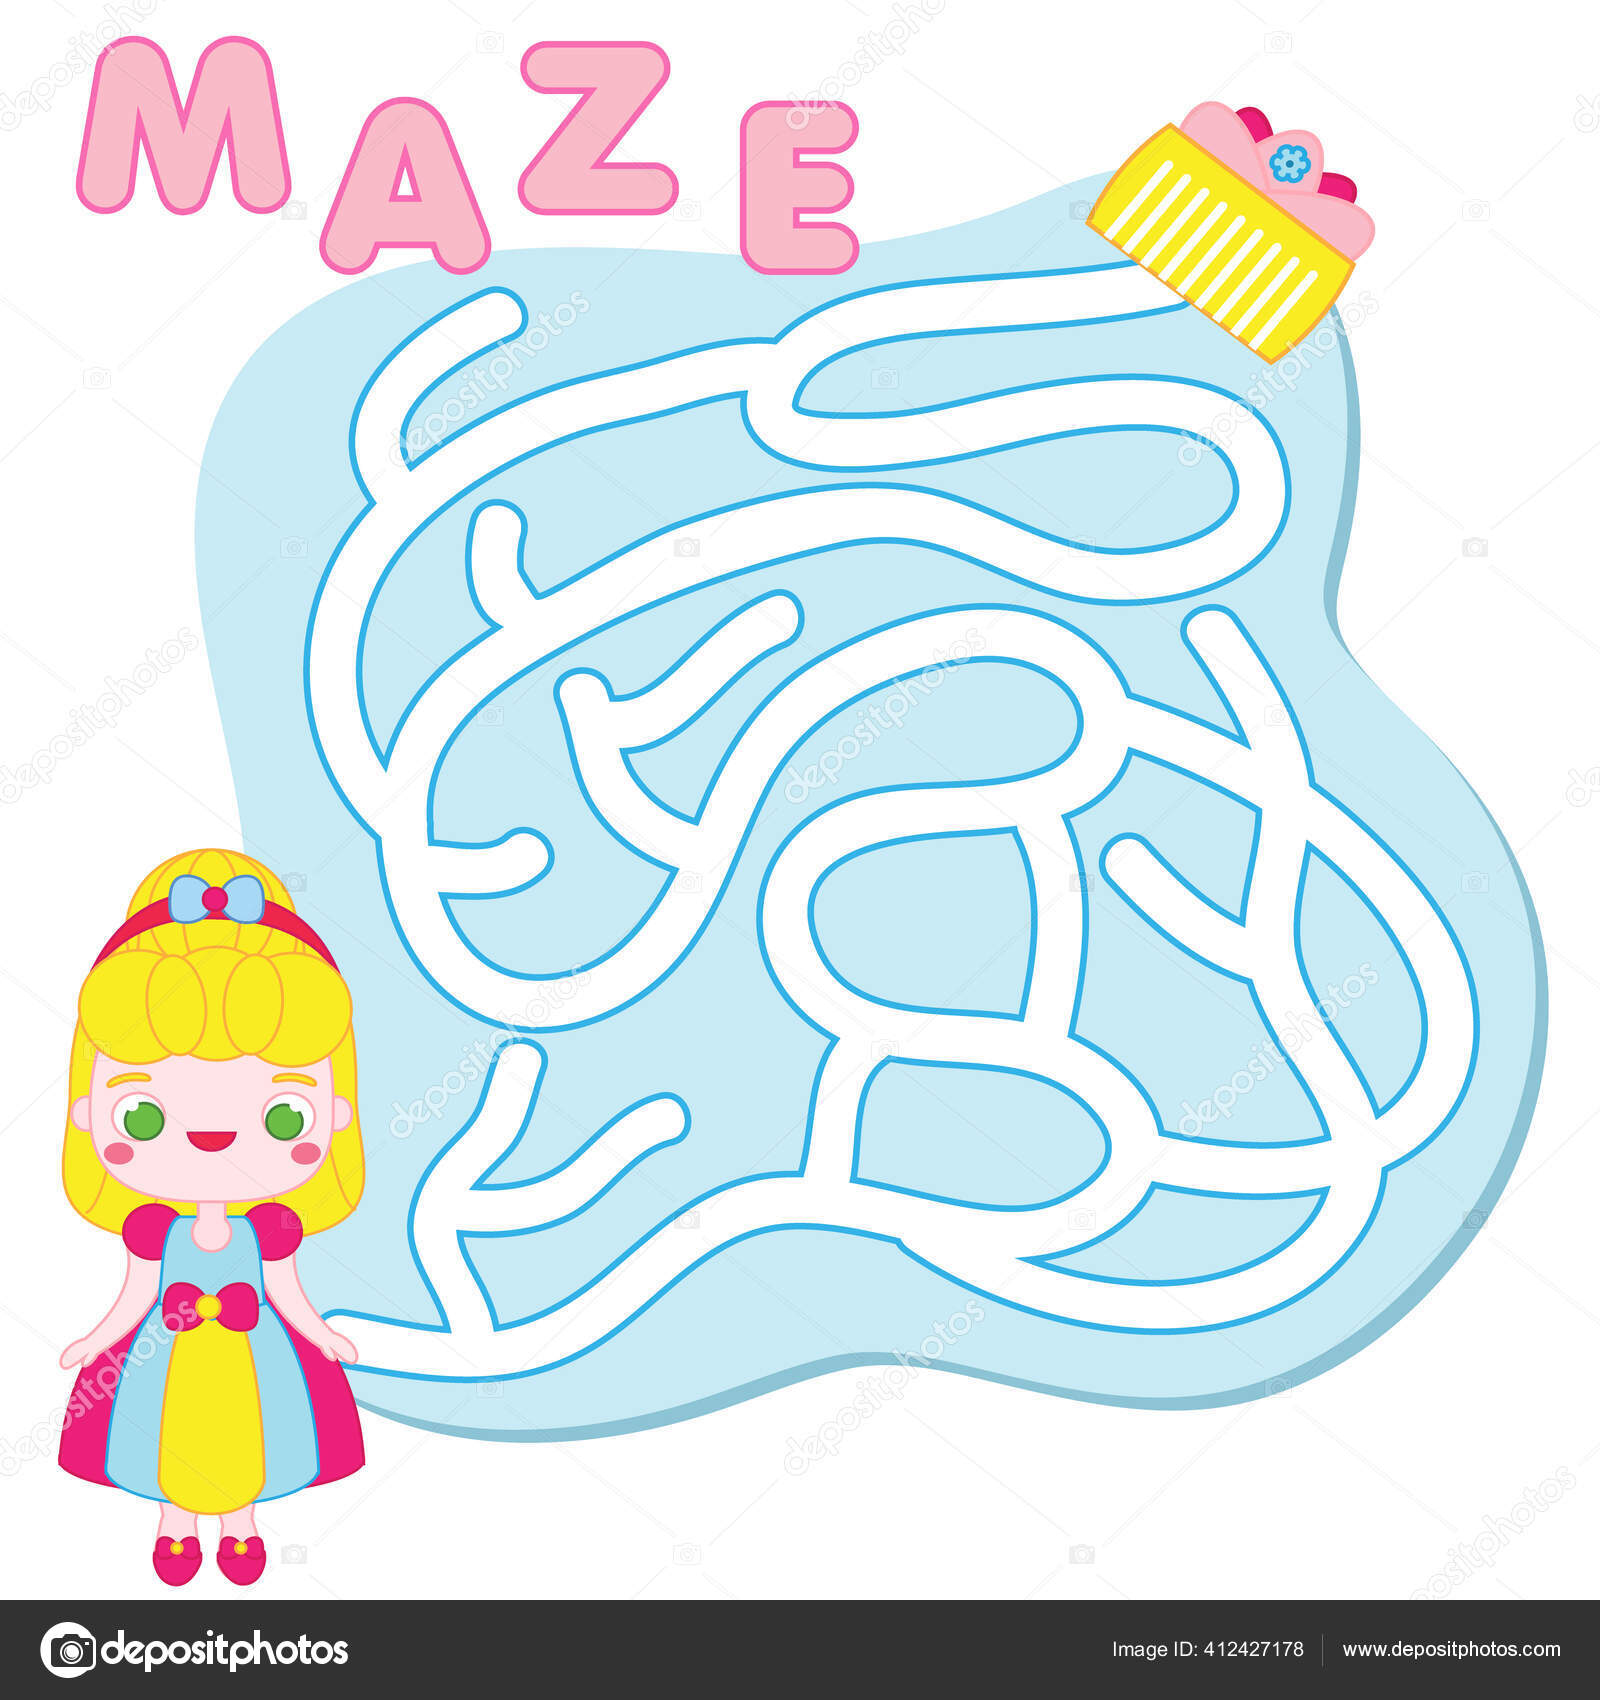 Quebra-cabeça de bebê cartões flash de nível fácil cortar e jogar planilha  de atividades de cores jogo para crianças